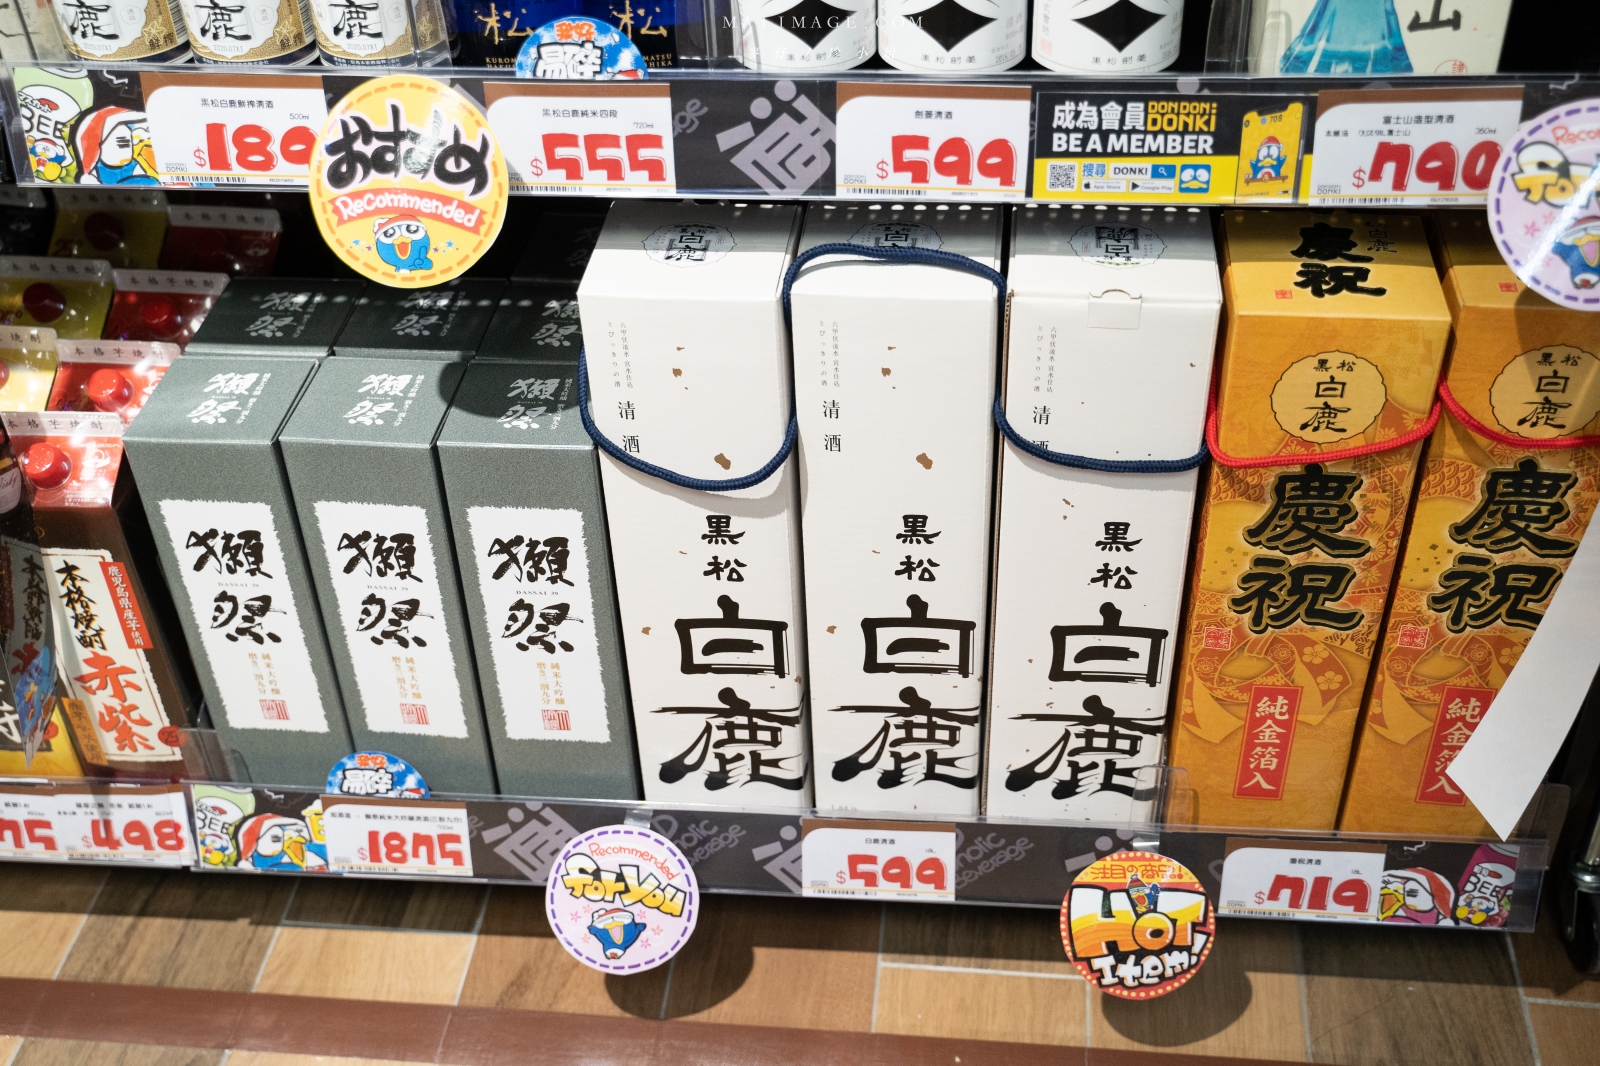 DONKI驚安殿堂台灣一號店 (唐吉軻德)這時間點去就對了～TOP 必買商品、半價限量看這邊